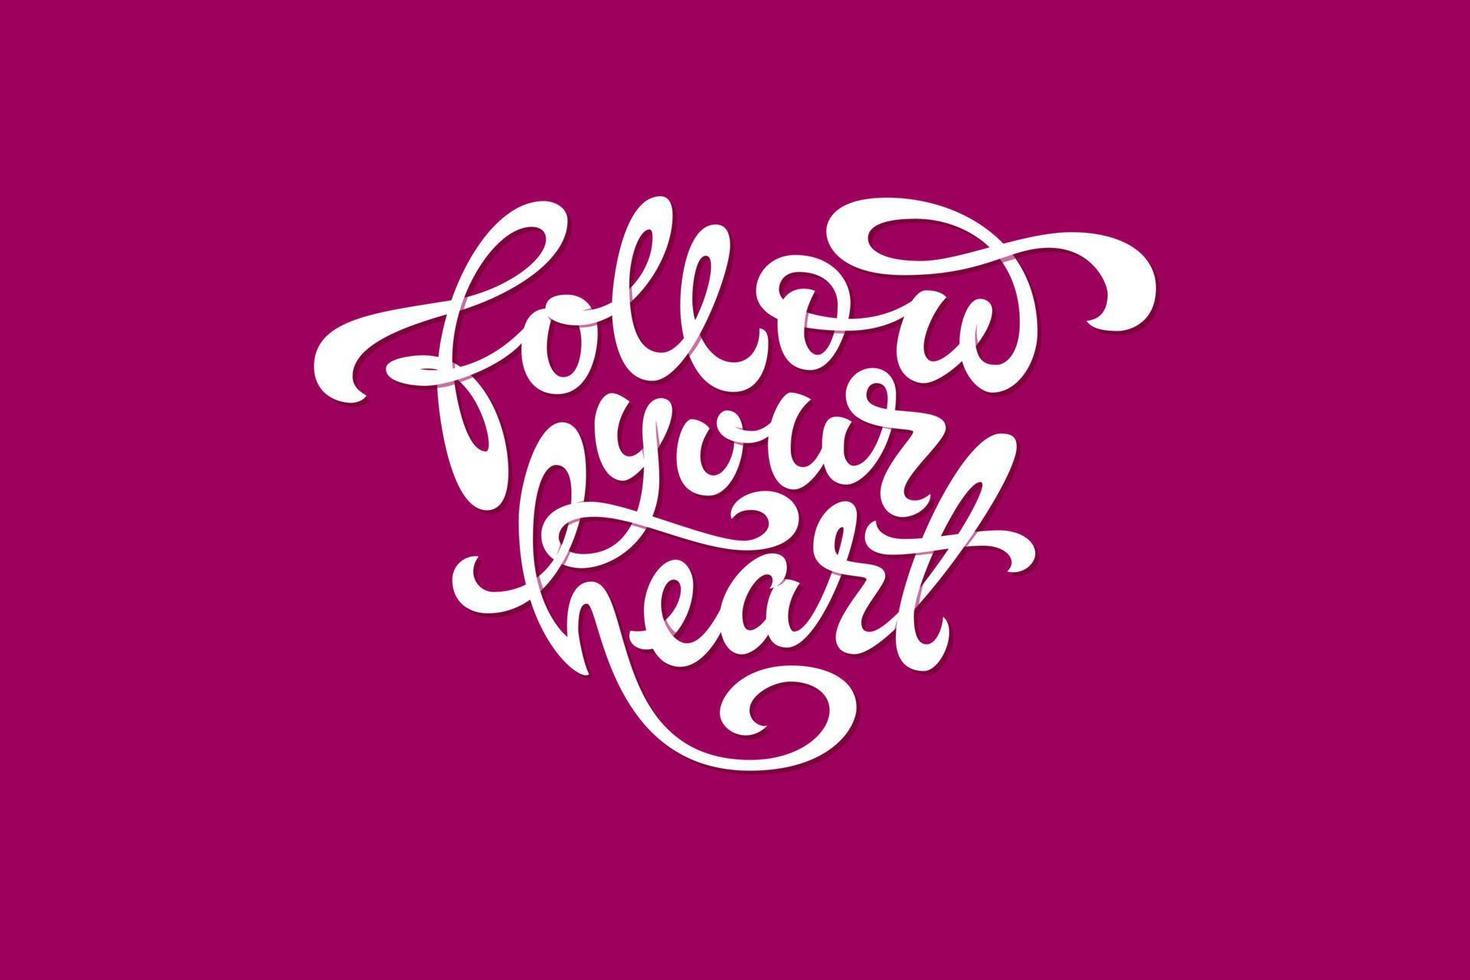 vit typografi följ ditt hjärta i form av ett hjärta på mörkrosa bakgrund. används för banderoller, t-shirt, skissböcker och anteckningsböcker omslag. vektor illustration.